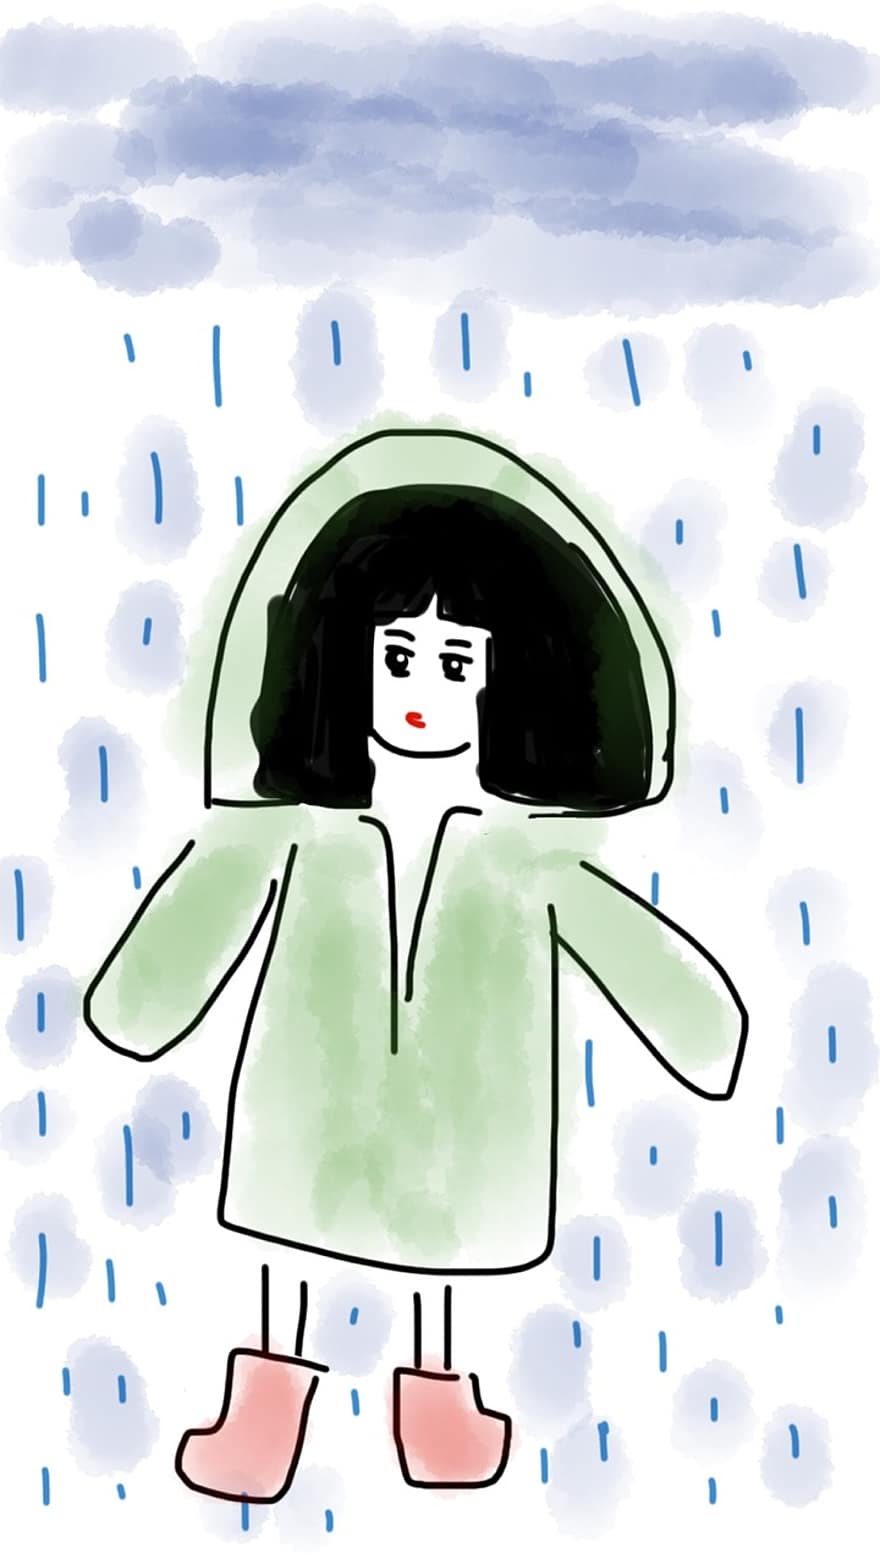 κορίτσι, αδιάβροχο, βροχή, γαλότσες, παιδί, καιρός, βροχερός, σκοτάδι, σύννεφο, συννεφιασμένος, βρεγμένος